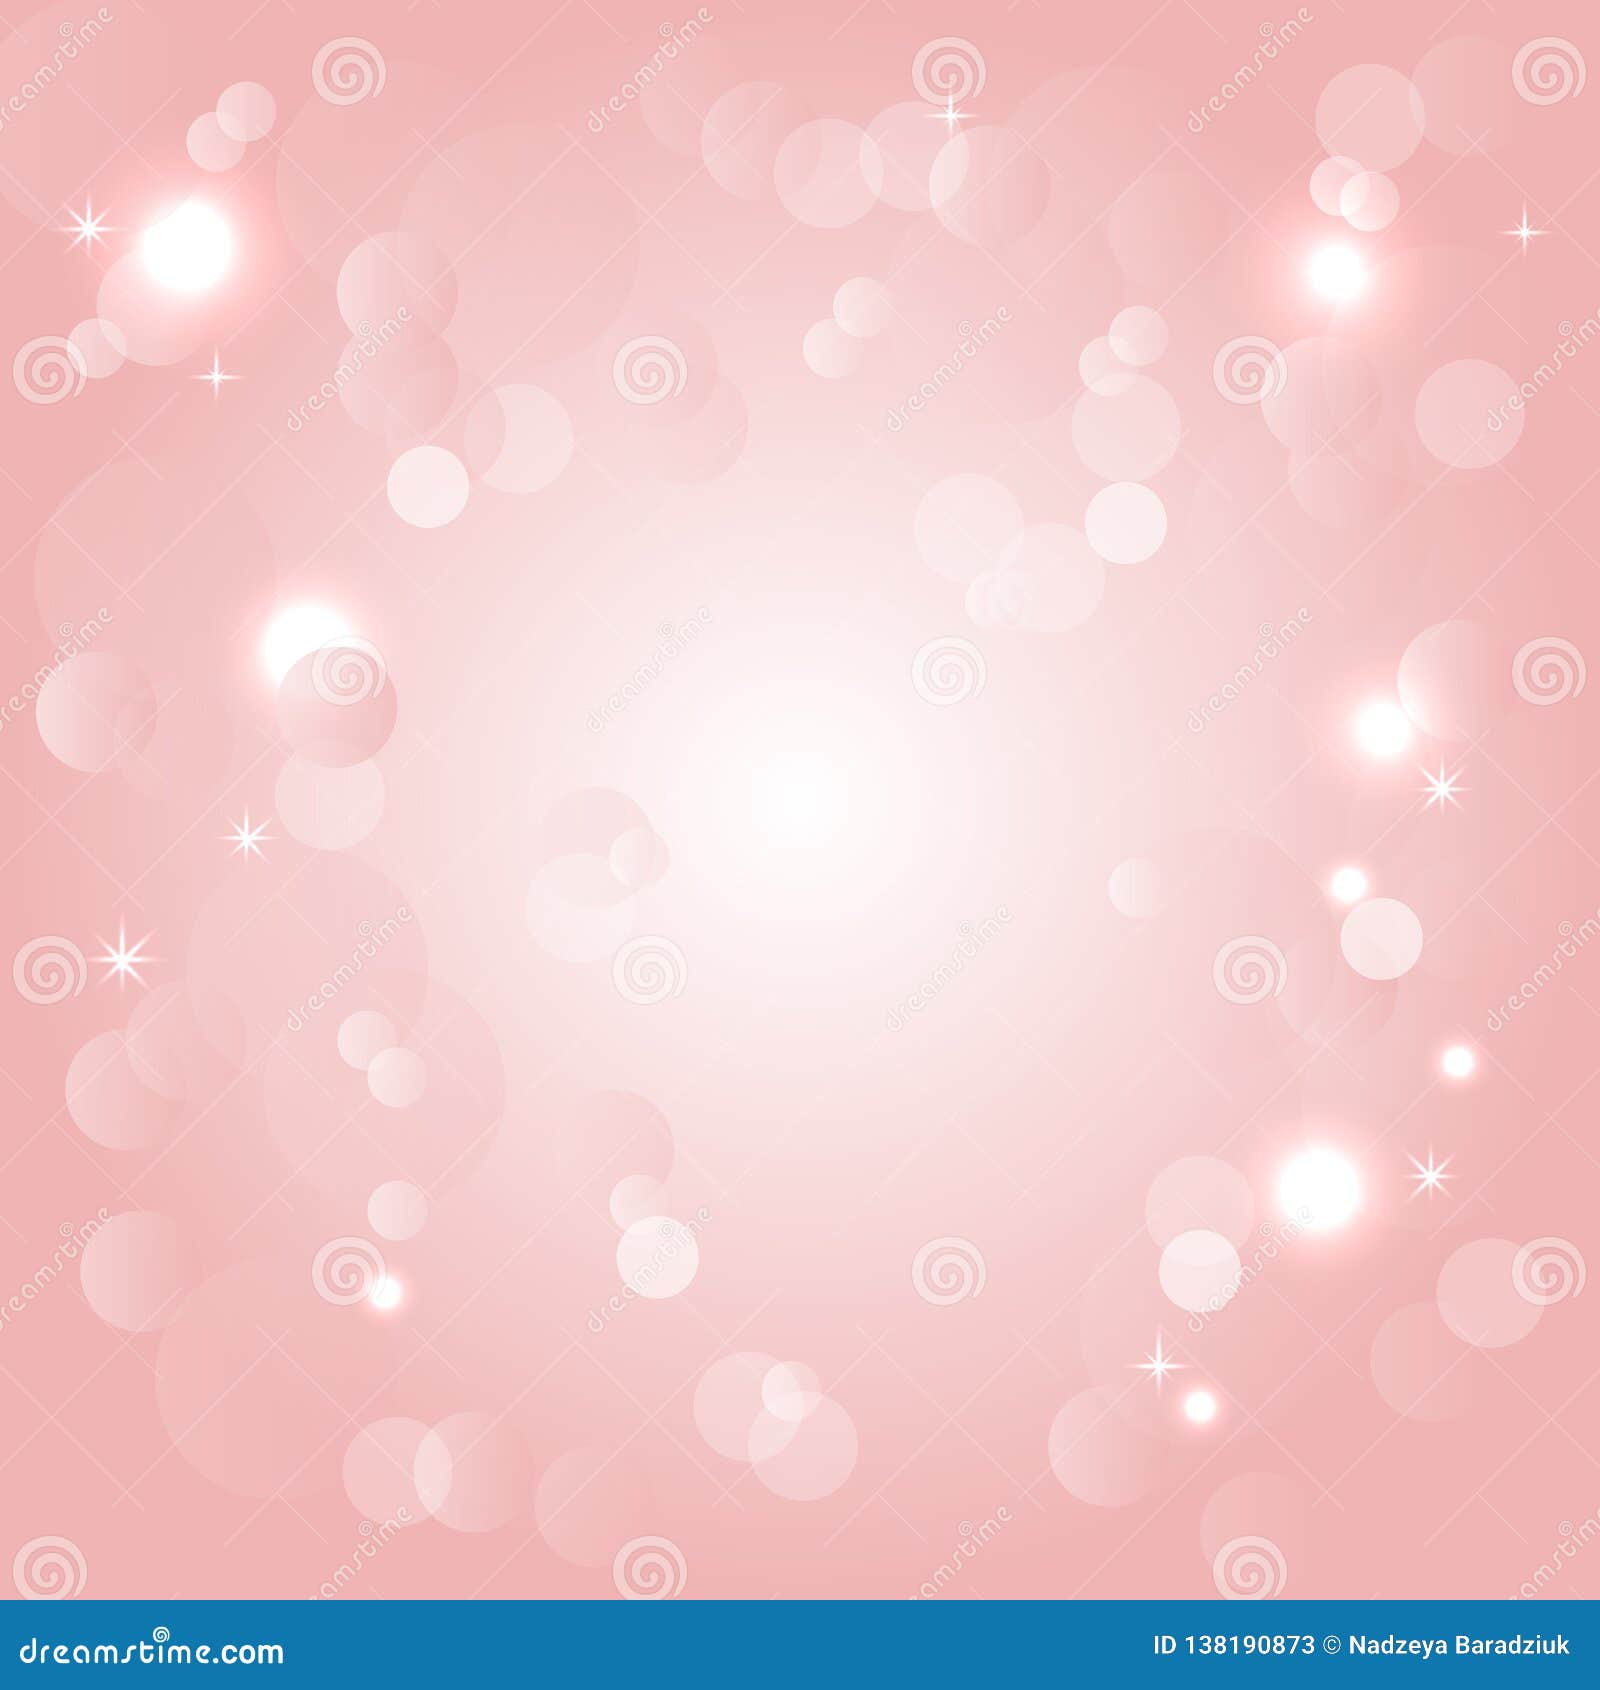 Trong tinh thần vui tươi và đầy sáng tạo, hãy sử dụng hình nền Pink Background - Glitter để trang trí cho điện thoại của bạn. Với sự lấp lánh và lung linh của màu hồng, bạn sẽ luôn cảm thấy tự tin và đẹp trai trong mắt mọi người.